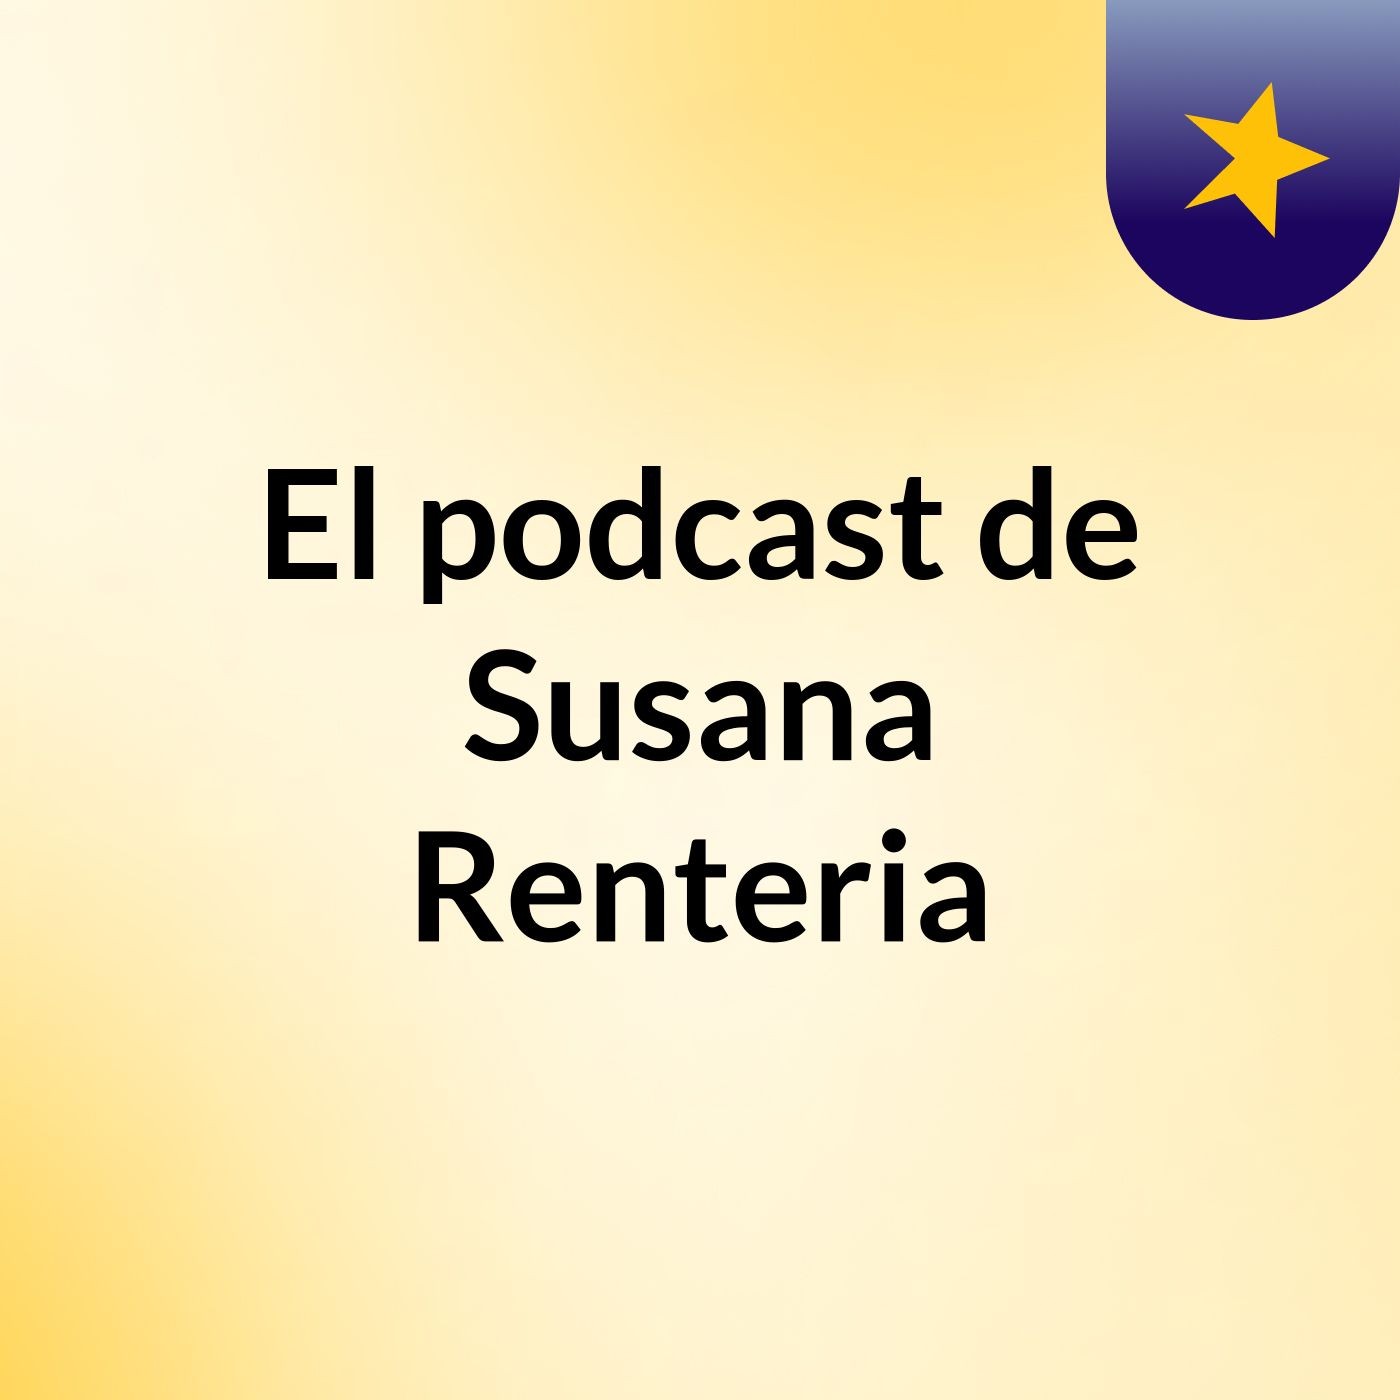 El podcast de Susana Renteria